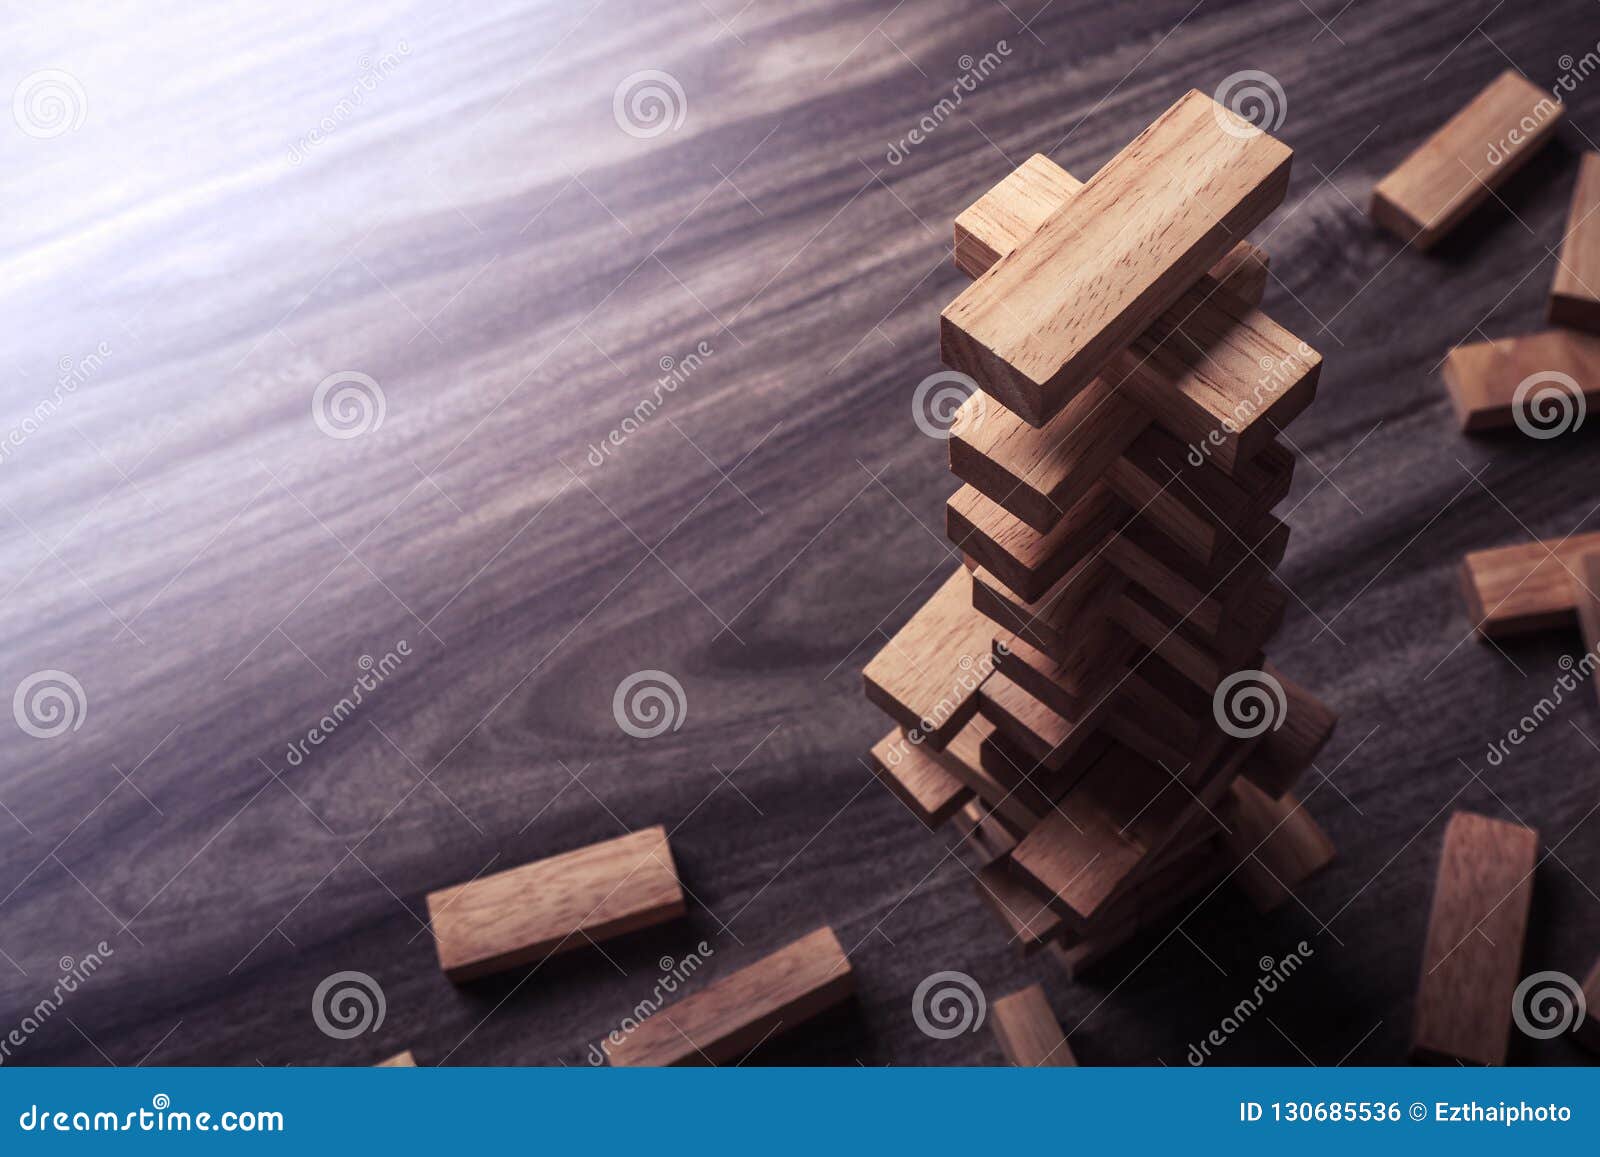 Ghép hình gỗ là một trò chơi giáo dục tuyệt vời cho trẻ nhỏ giúp cải thiện tính nhạy bén và khả năng tư duy logic. Xem hình ảnh liên quan đến ghép hình gỗ sẽ khiến bạn cảm thấy hứng thú và muốn tham gia ngay lập tức để tận hưởng niềm vui với những khối gỗ đẹp mắt đó.